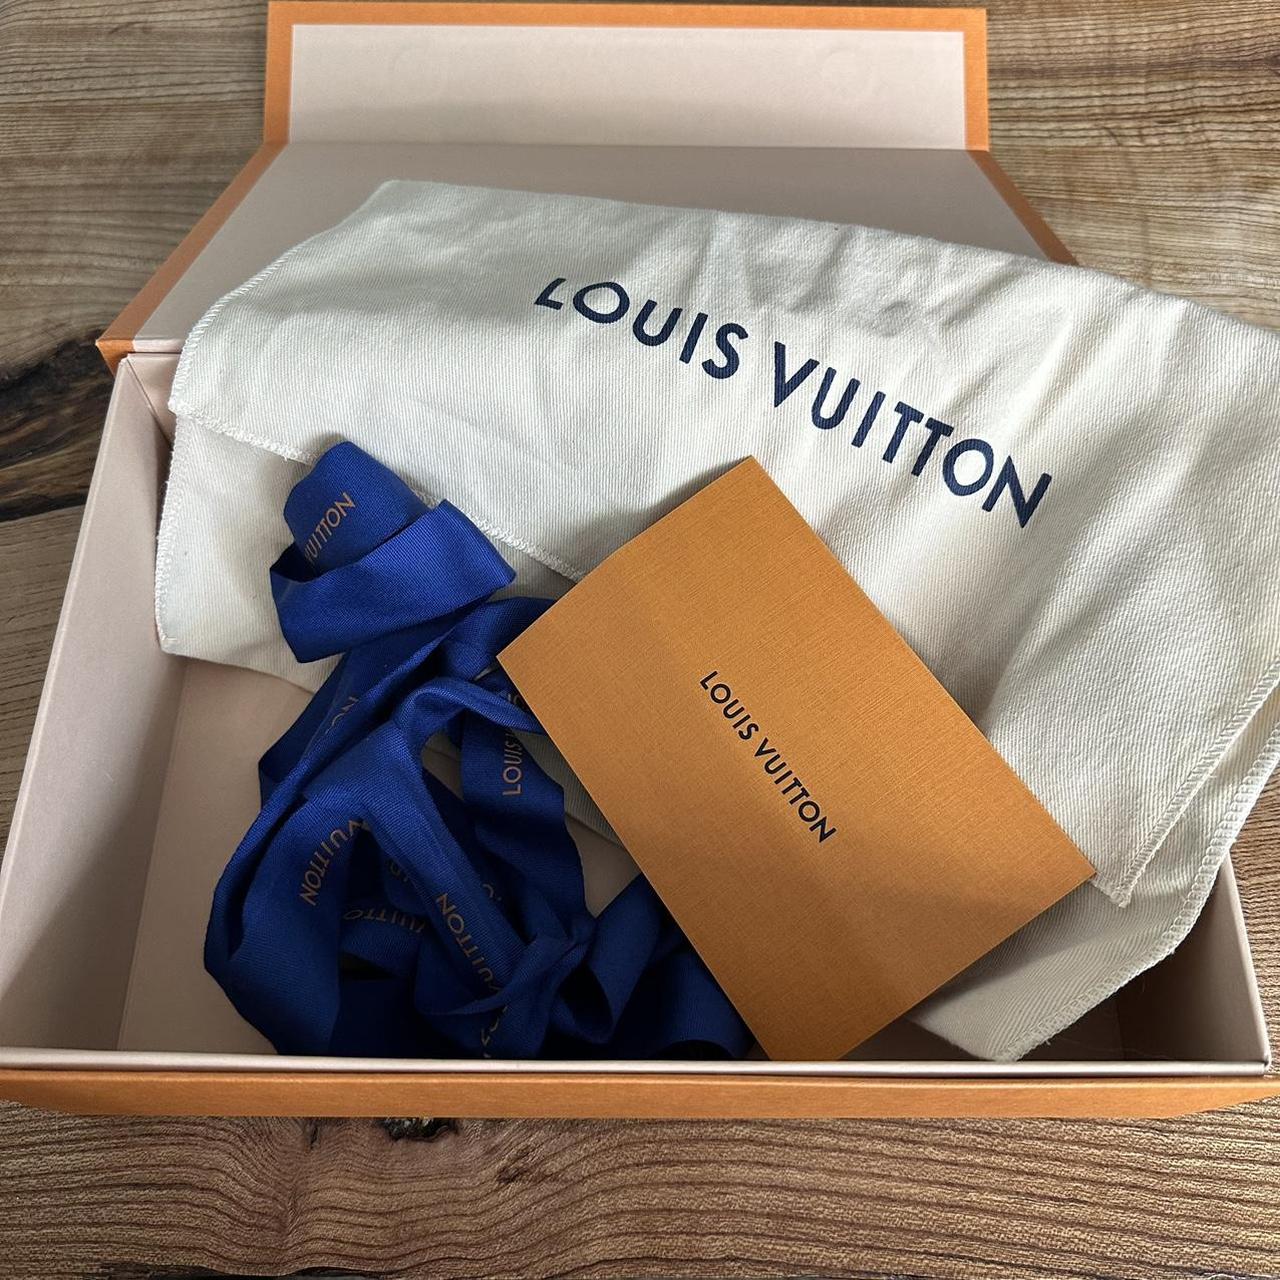 Louis Vuitton wallet box, dust bag and bag - Depop